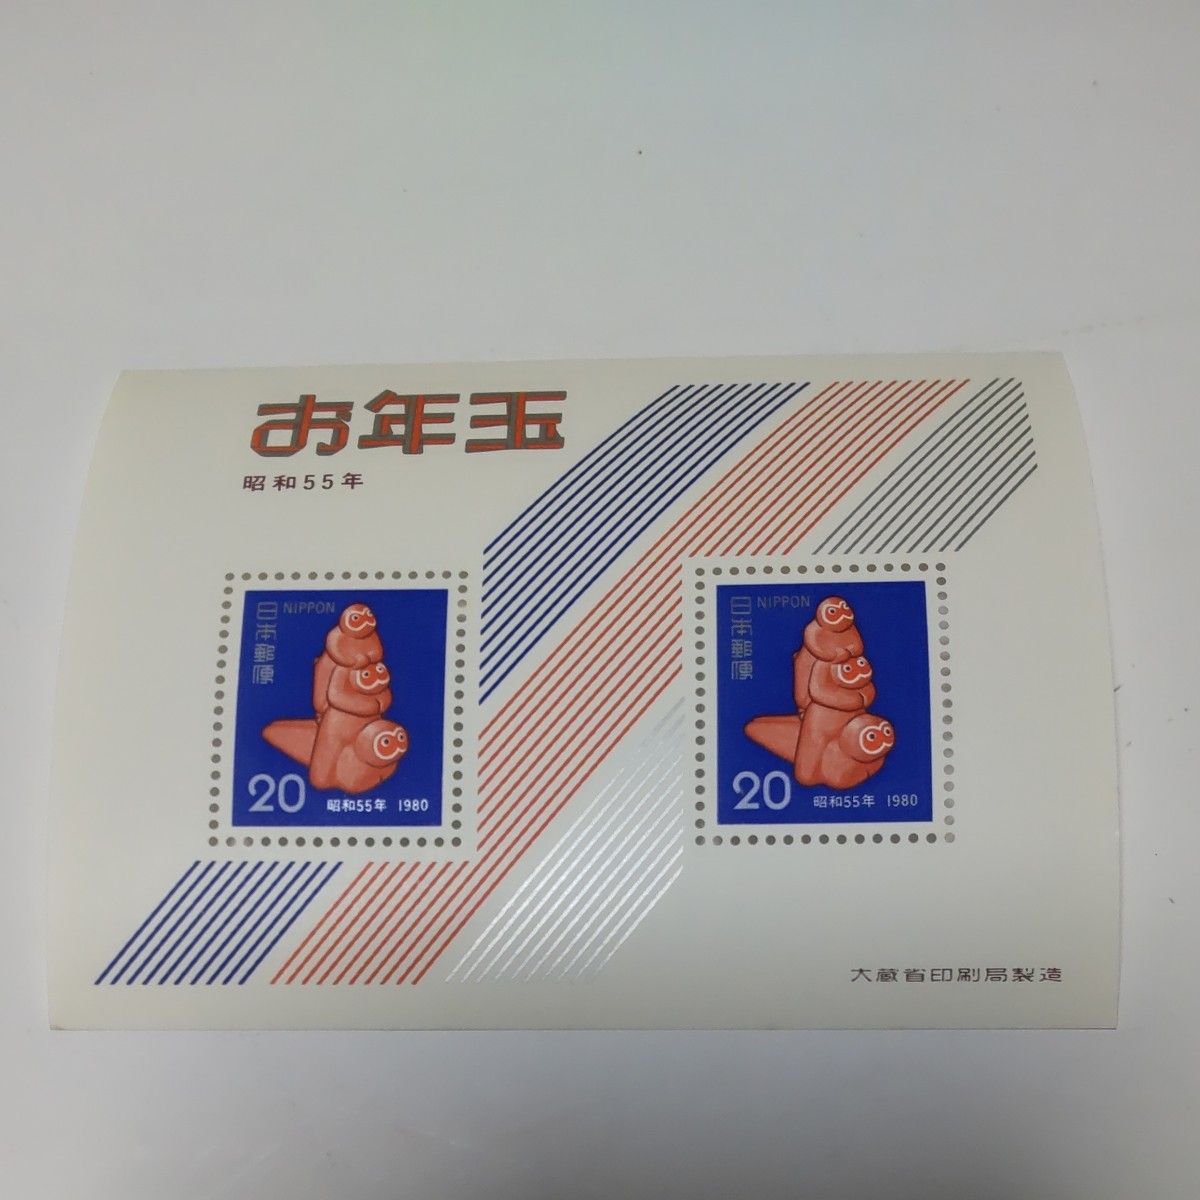 年賀切手 小型シート おまとめ  10シート  お年玉切手   記念切手